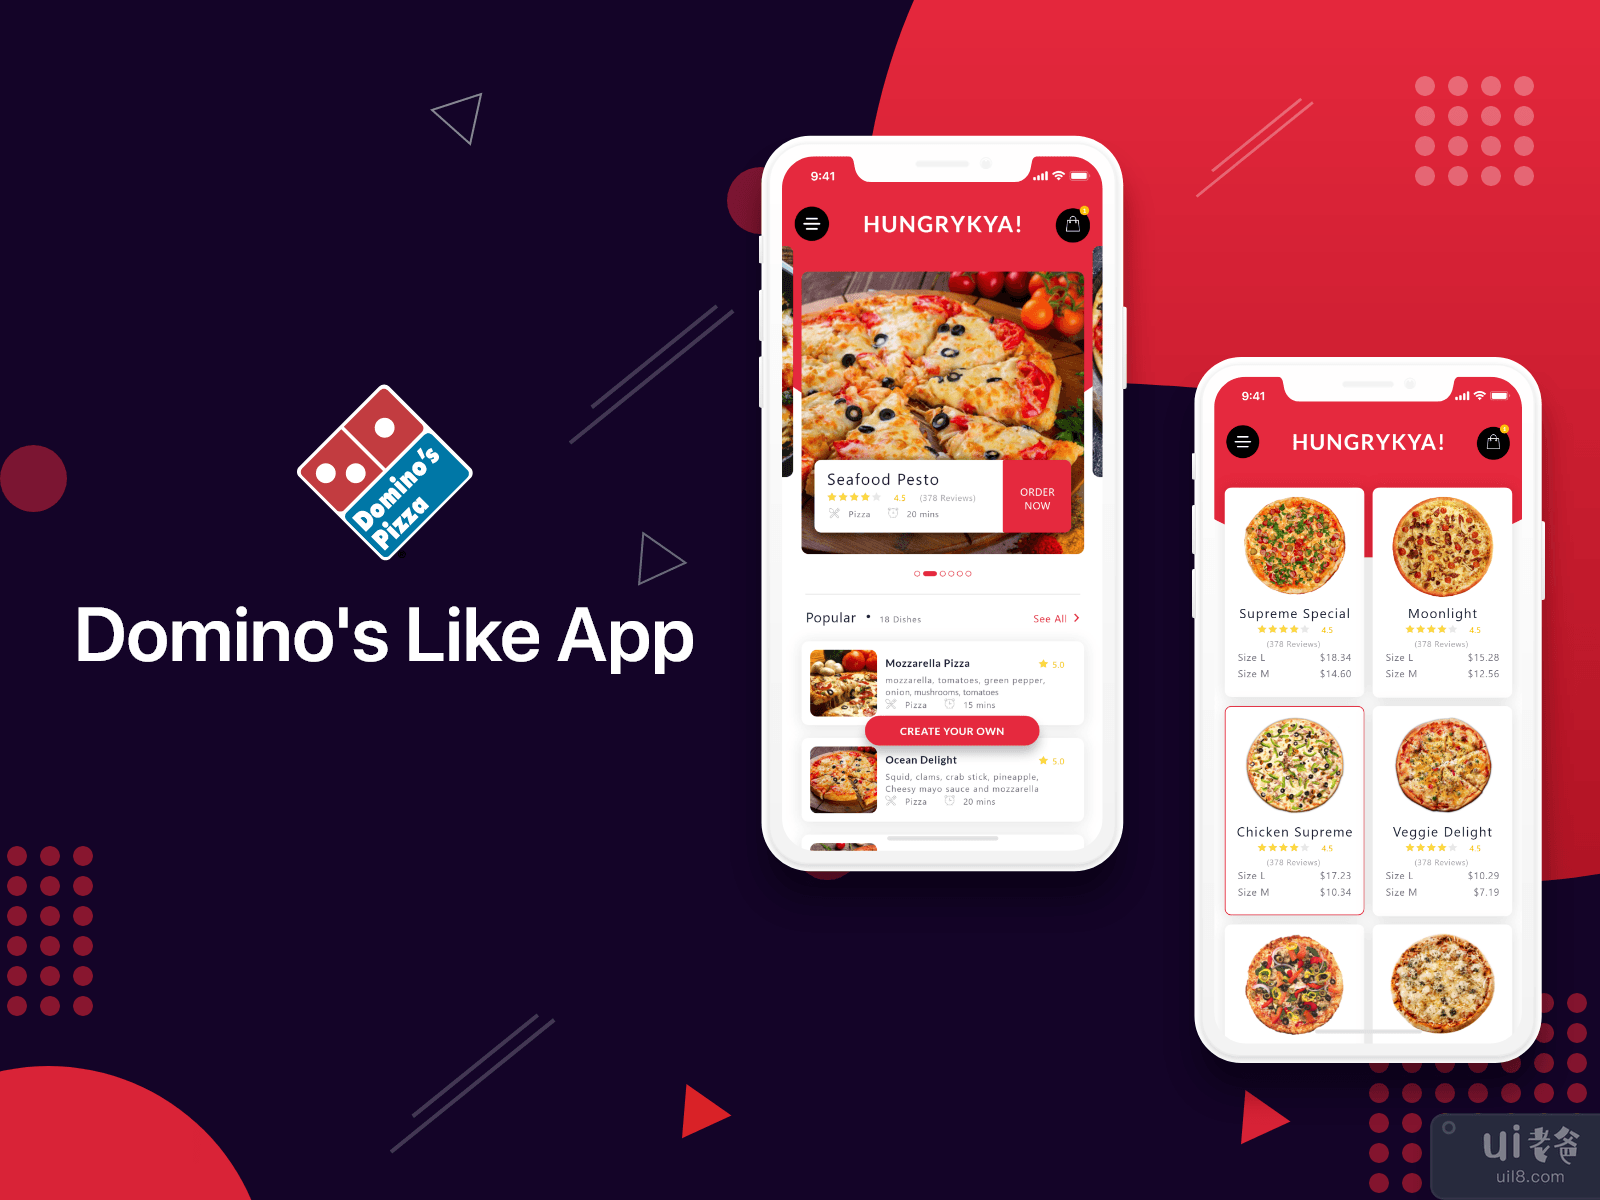 Online Food App like Dominos's